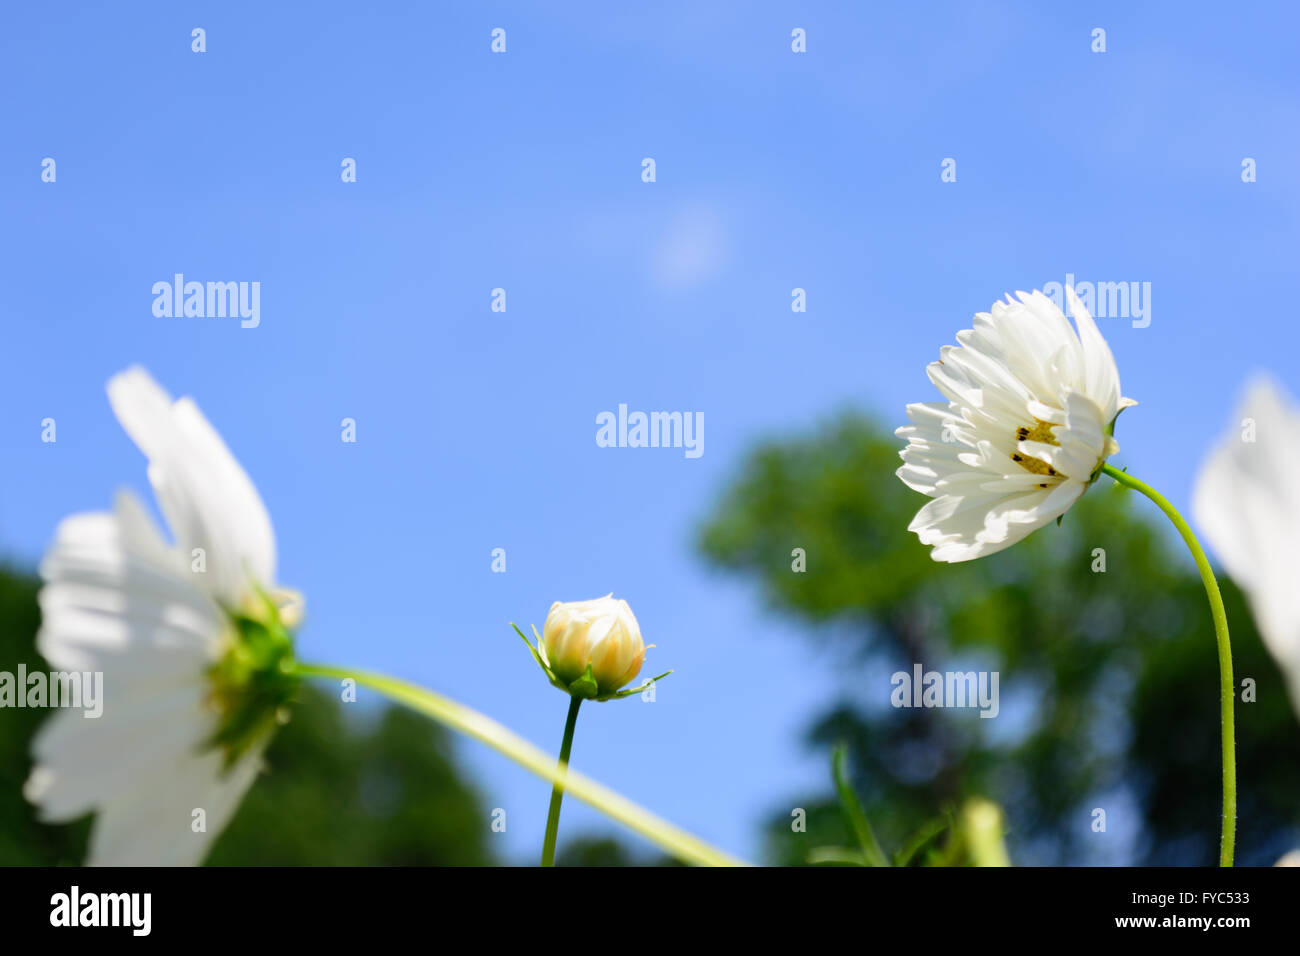 Langer Stiel weiß Blume Standout selektiven Fokus Mitte mit Blumen im Vordergrund, im Zentrum und blauen Himmelshintergrund Knospe Stockfoto